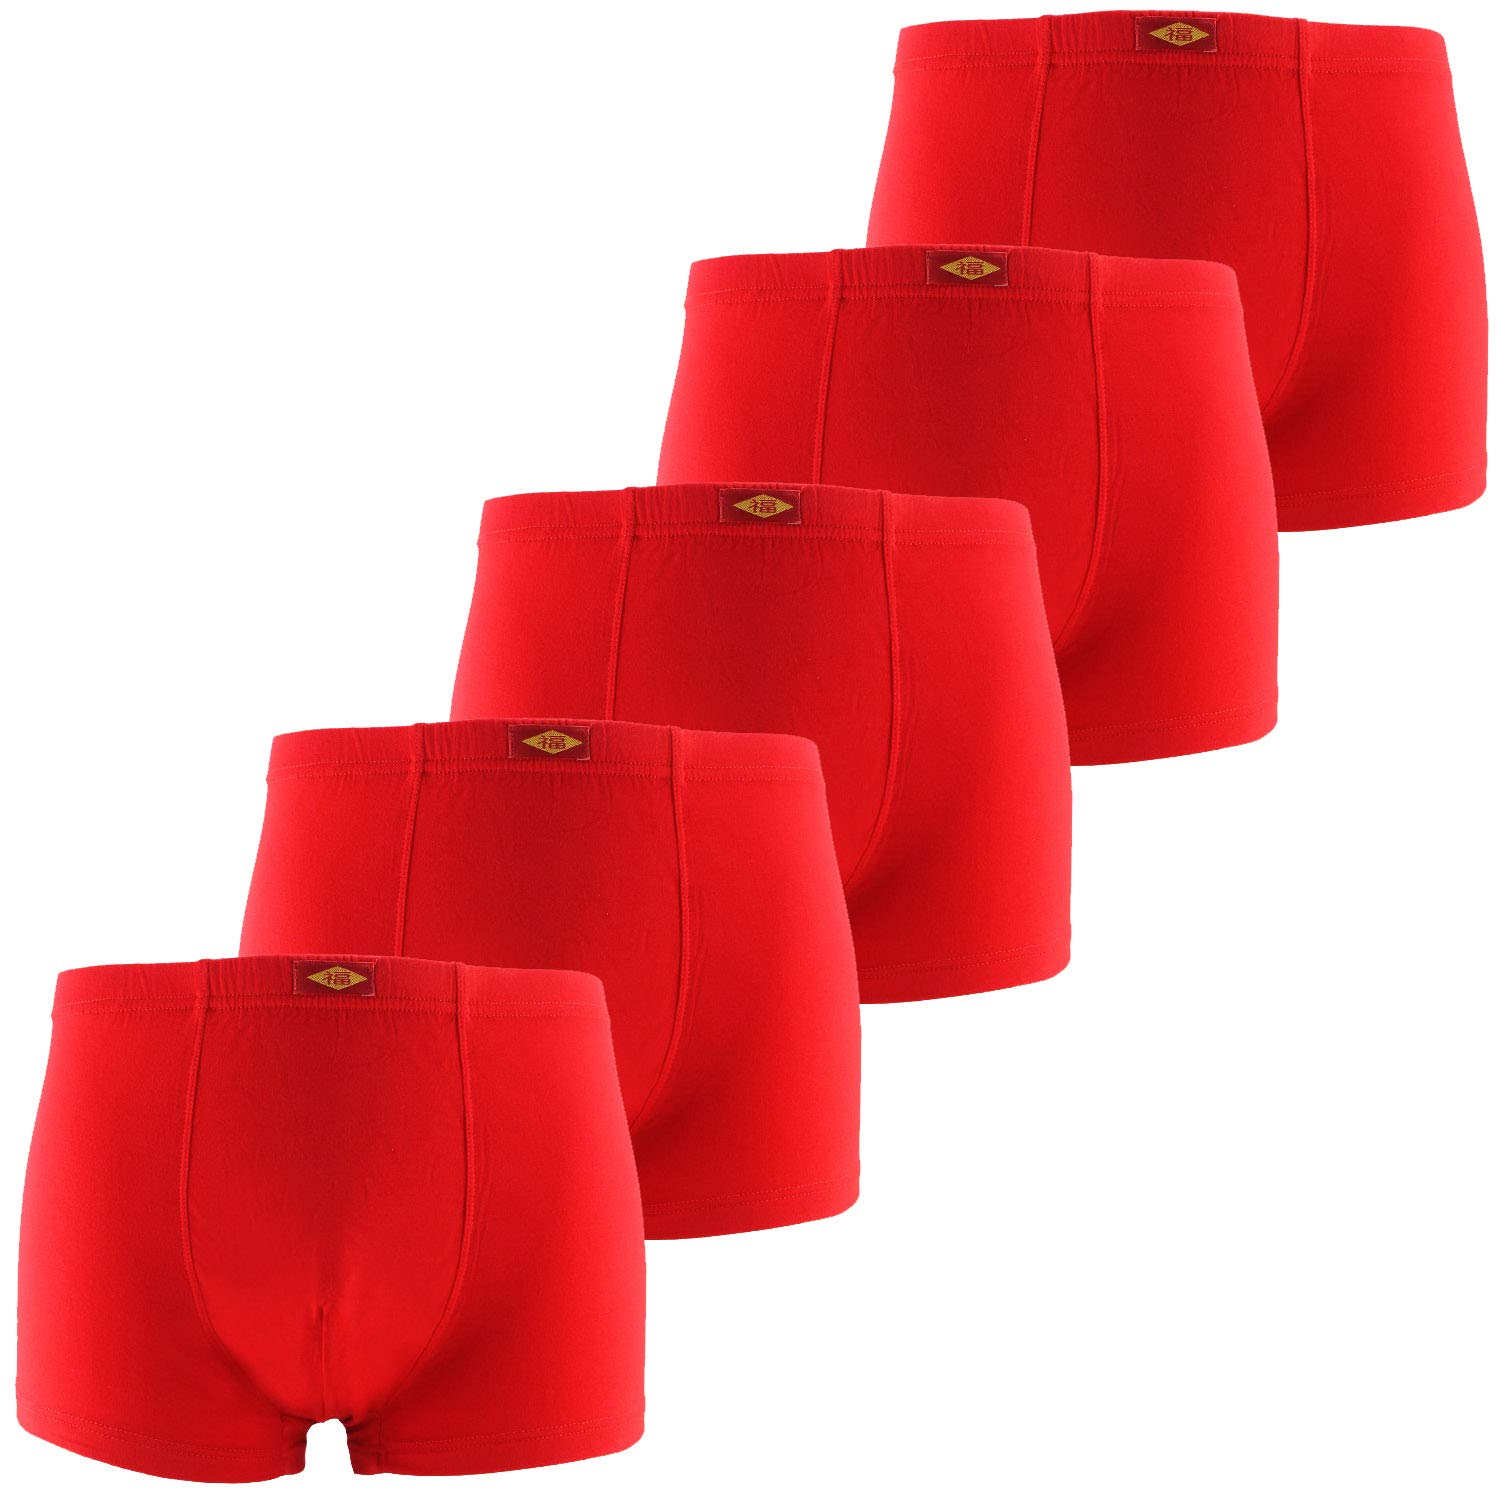 Männer Underwear Soft Bambus Boxer Shorts (16)